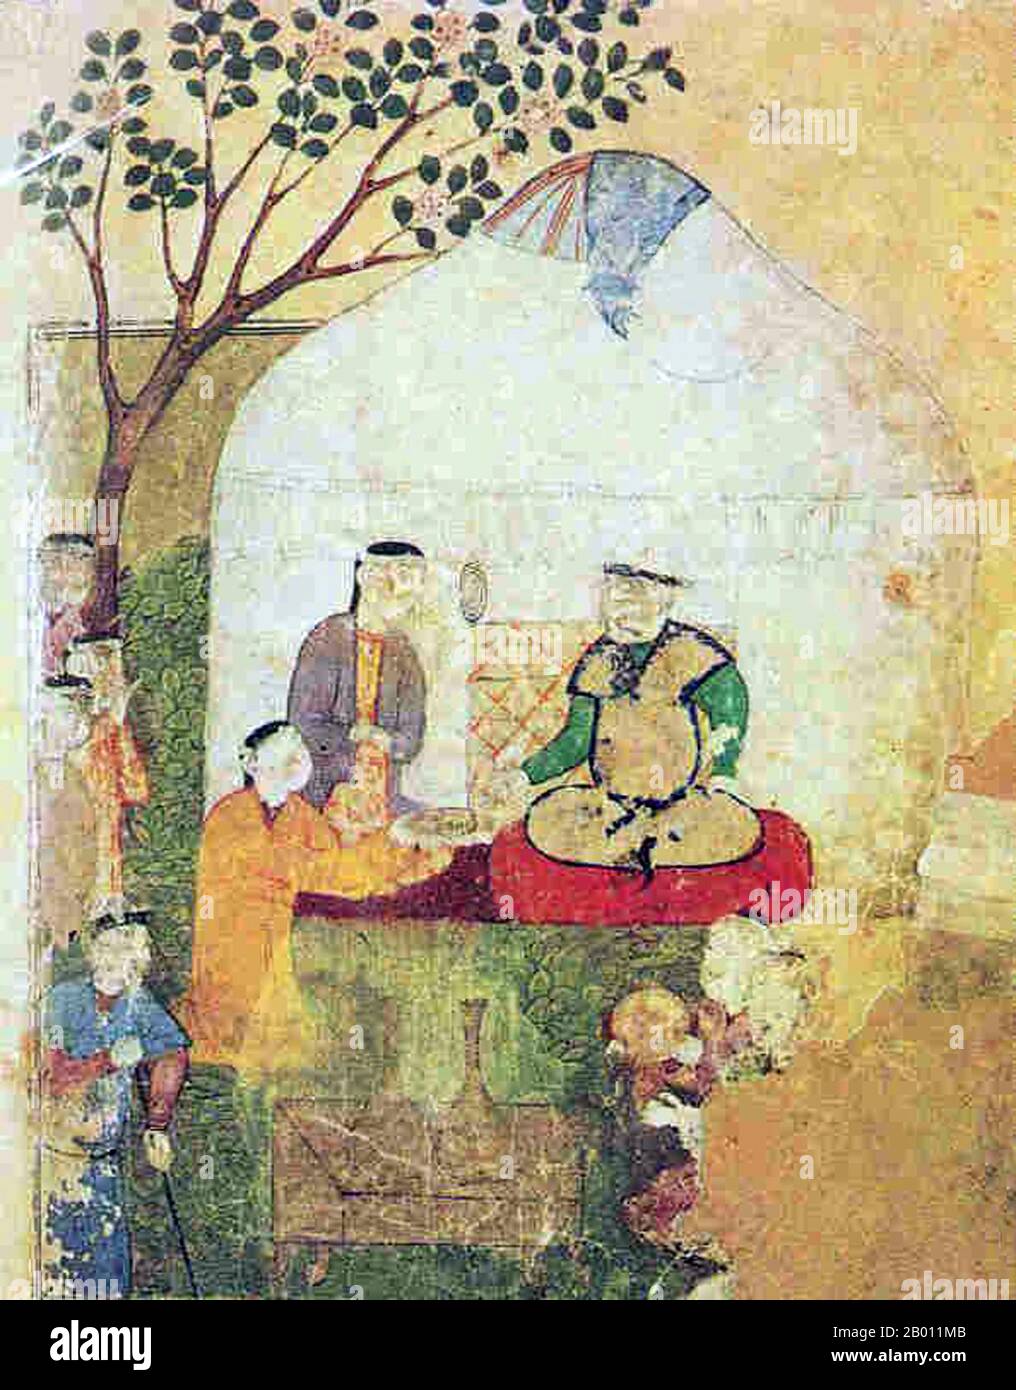 Uzbekistan: Muhammad Shaybani, Khan degli Uzbeki (1500-1510) seduto in un yurt o ger (tenda), 16 ° secolo. Abul-Fath Muhammad, conosciuto nei secoli successivi come Shaybani Khan (c.. 1451 – 2 dicembre 1510) è stato un khan degli Uzbeki (dal 1500) che ha continuato a consolidare varie tribù uzbeki e gettato le basi per la loro ascesa in Transixiana. Egli era un discendente di Genghis Khan attraverso il nipote Shayban e considerava i Timuridi come usurpers del patrimonio genghiside in Asia centrale. Il suo nome nativo turco era Shibagh ('wormwood' o 'ossidian'). Foto Stock